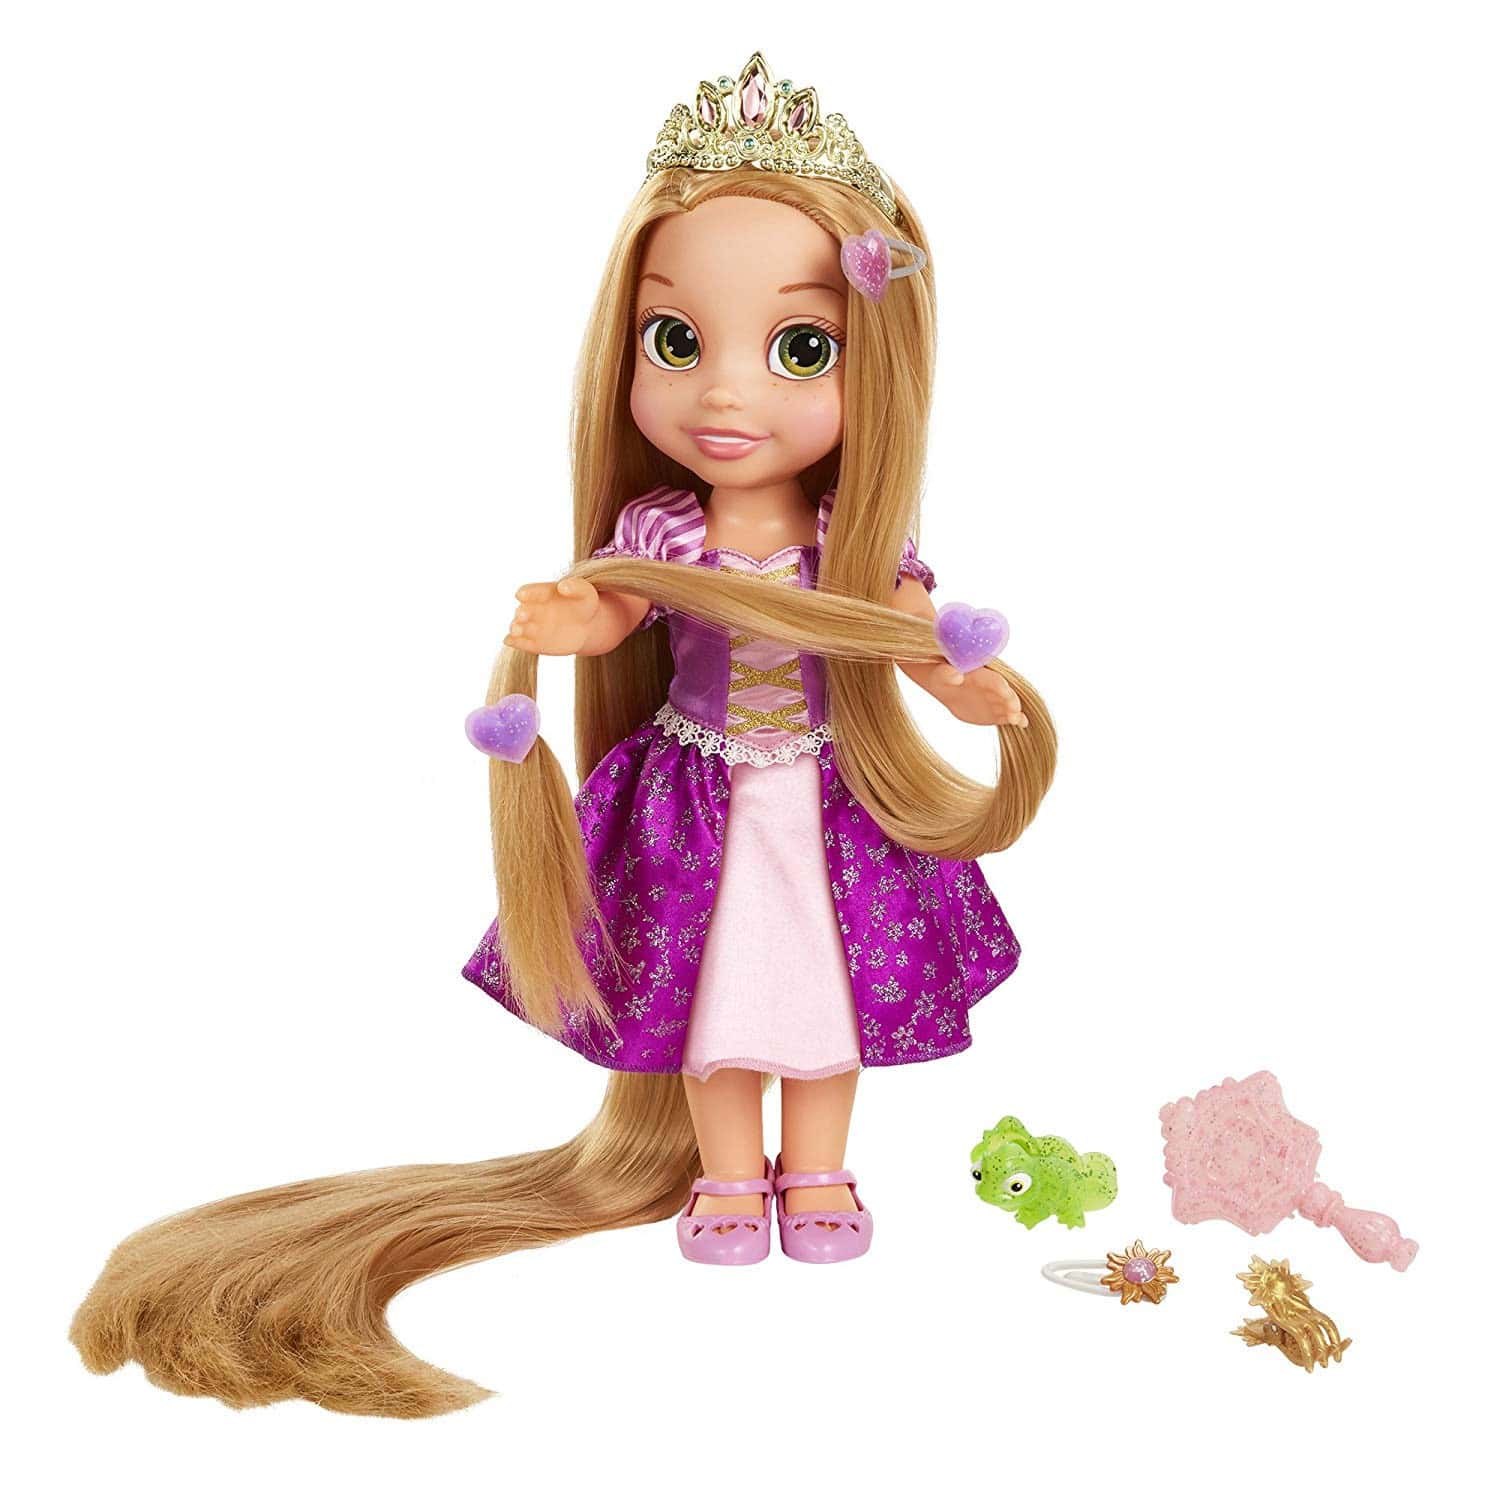 Рапунцель большая. Куклы принцессы Диснея Рапунцель. Кукла Рапунцель с длинными волосами малышка 42 см. Кукла Рапунцель с длинными волосами Disney. Кукла Рапунцель длинные волосы 45 см.